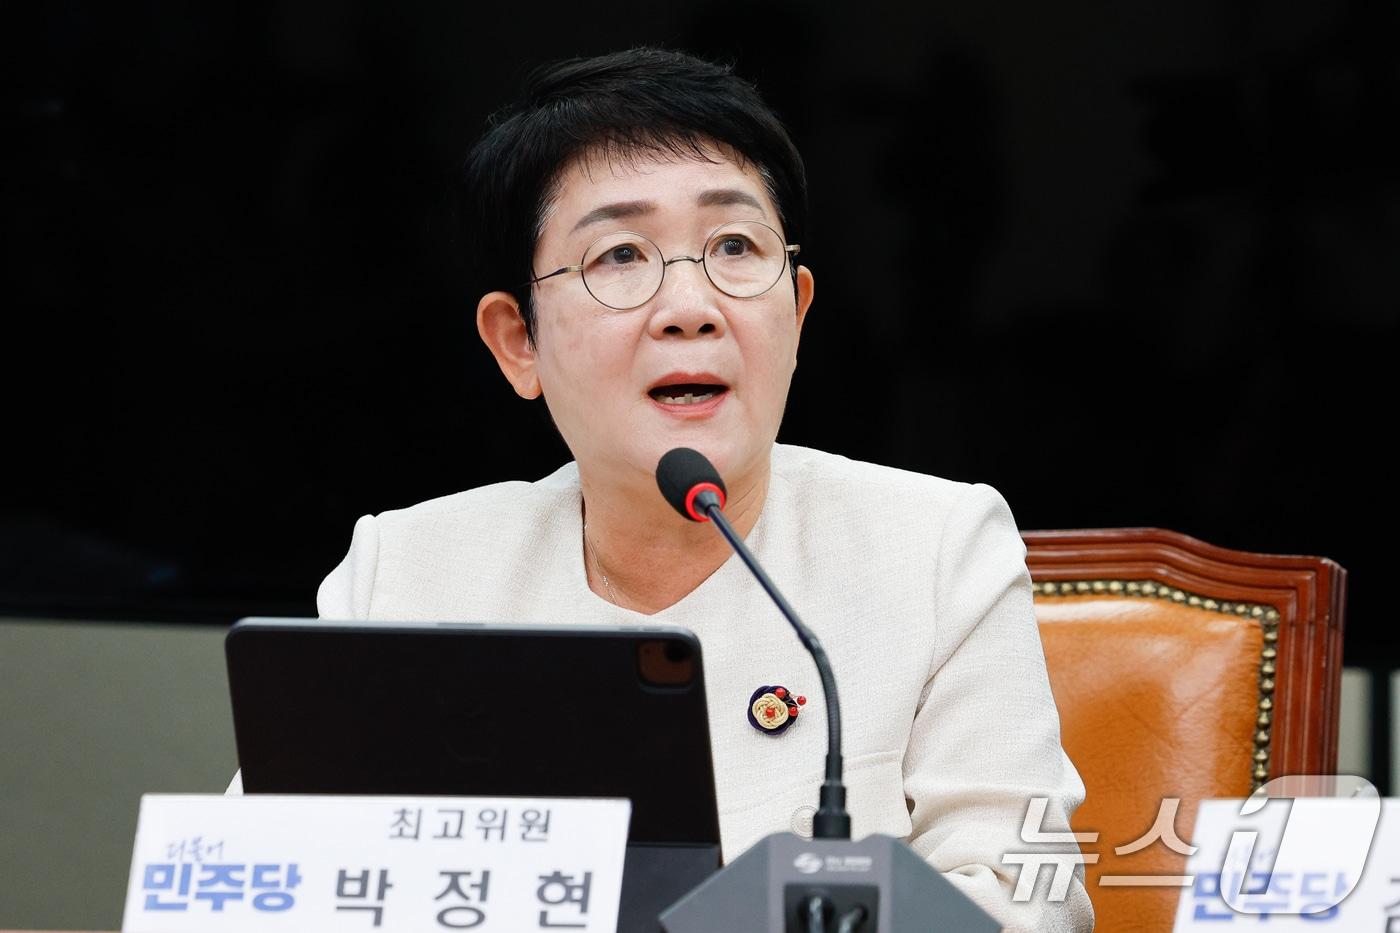 박정현 더불어민주당 의원이 10일 지명직 최고위원에서 사퇴했다. /뉴스1 ⓒNews1 안은나 기자